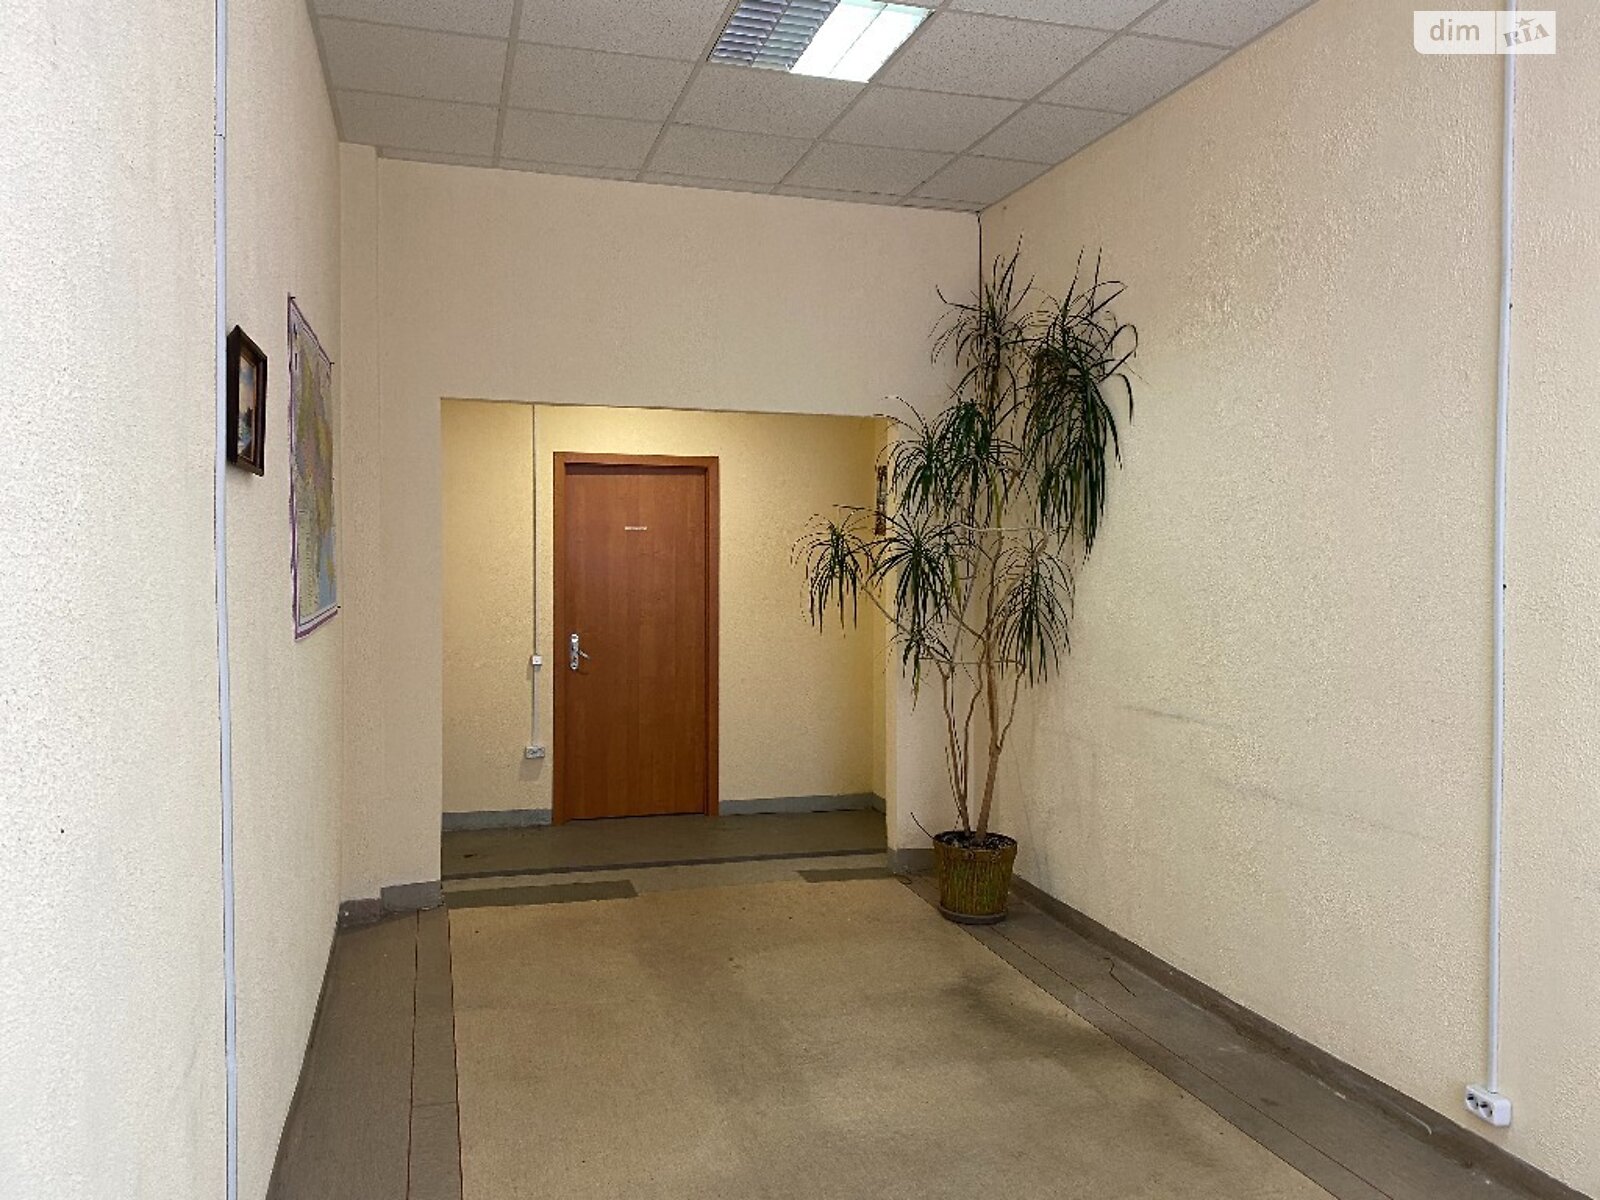 Аренда офисного помещения в Днепре, Ольги княгини улица 22, помещений - 1, этаж - 1 фото 1